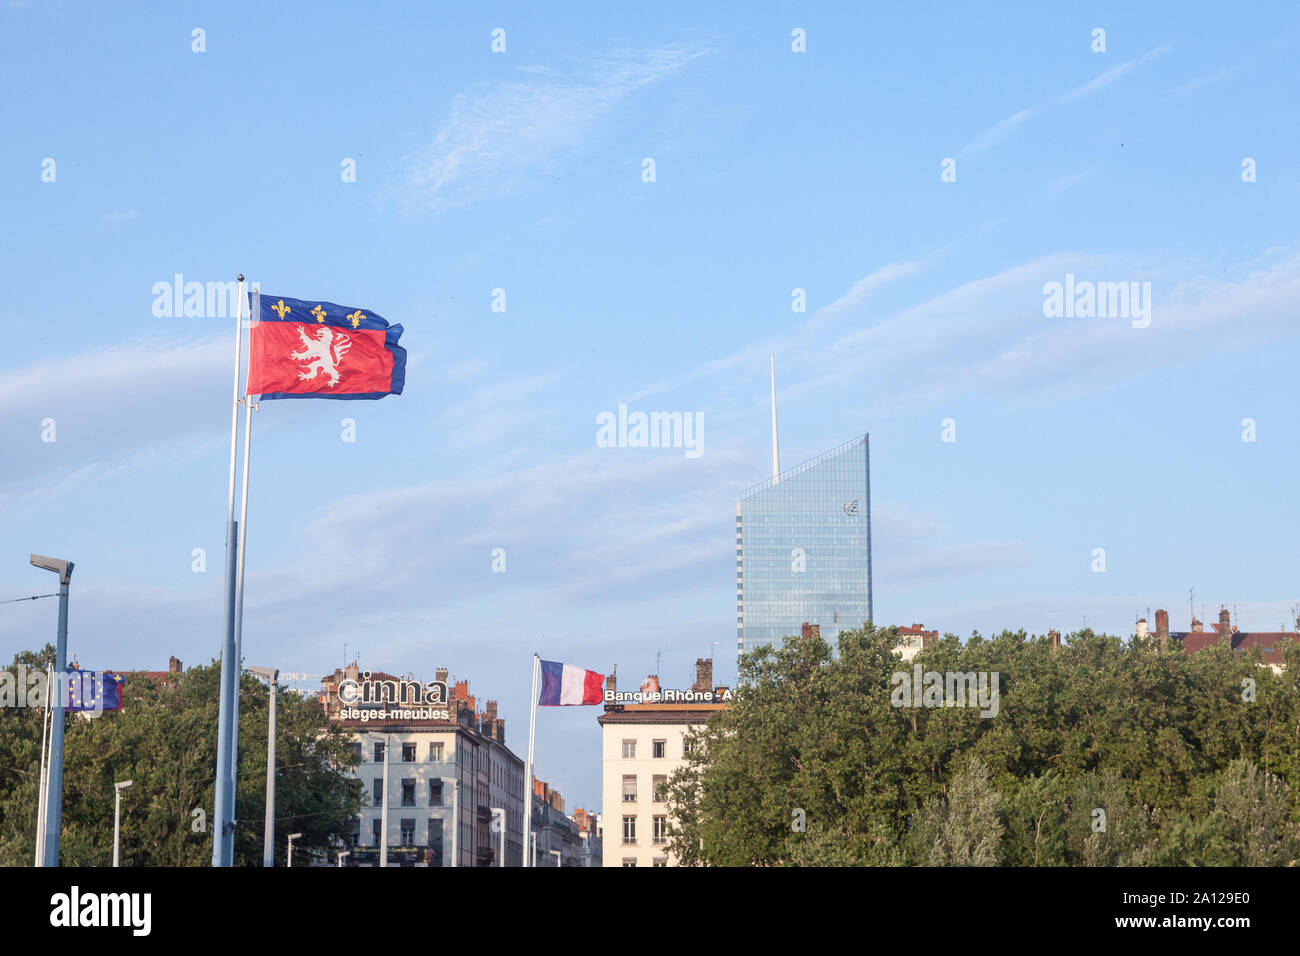 LYON, FRANCIA, 14 de julio de 2019: Bandera de Lyon renuncia delante del mostrador Incity Tower, un símbolo de la ciudad de negocios y los altos rascacielos de altura b Foto de stock